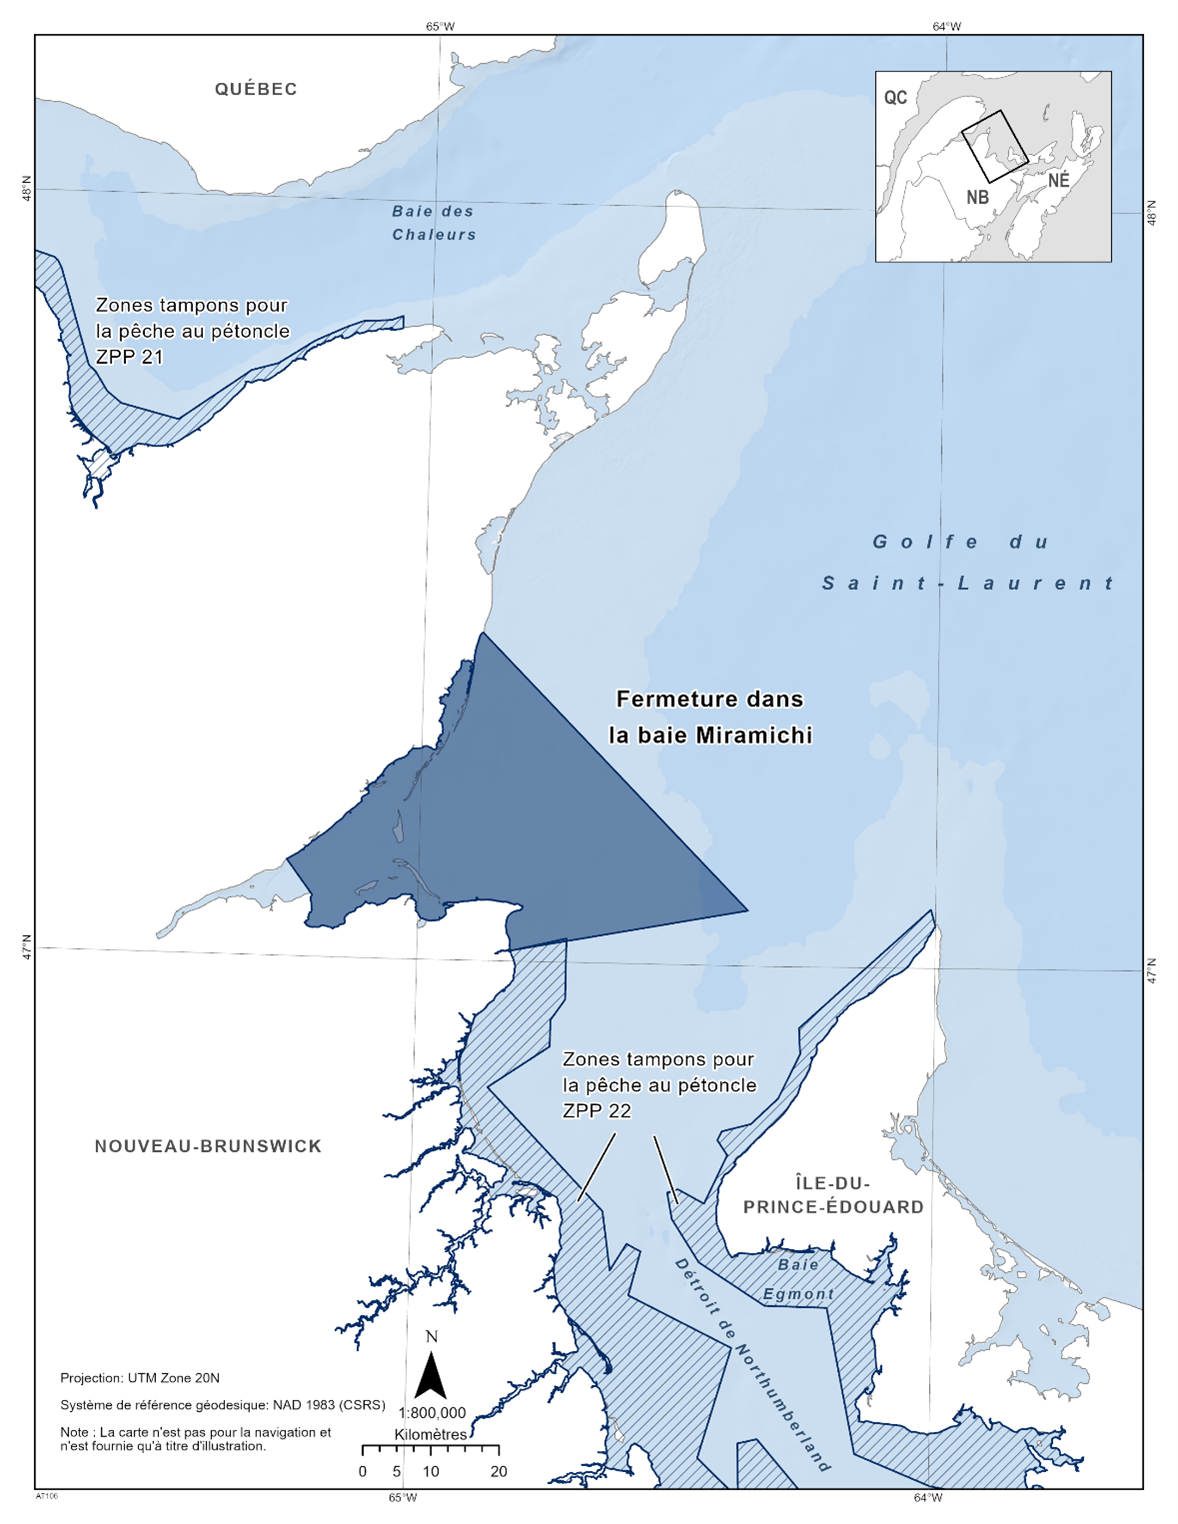 Carte de la fermeture de la baie de Miramichi en bleu foncé. La carte montre également les refuges marins situés à proximité avec des lignes diagonales bleu foncé (zone tampon pour le pétoncle ZPP 21 et ZPP 22).